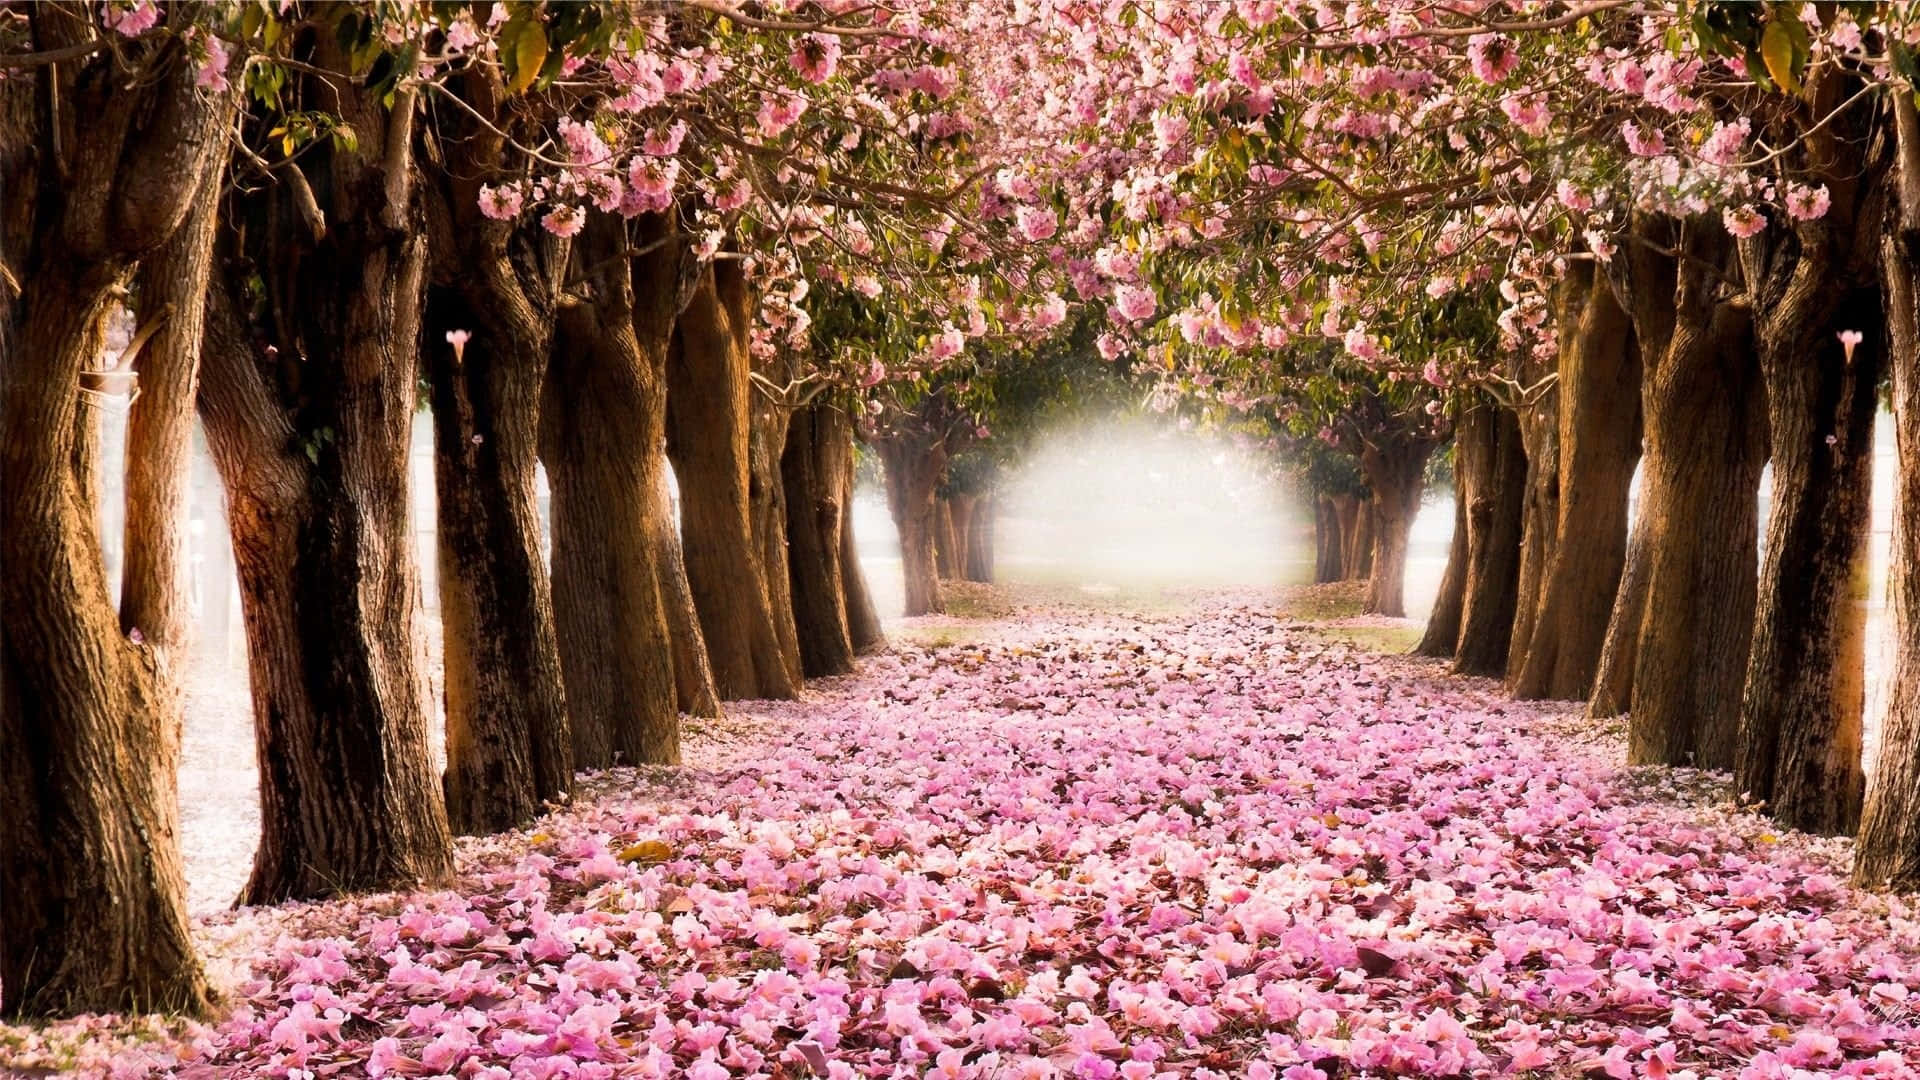 Vibrant Spring Trees in Full Bloom Wallpaper